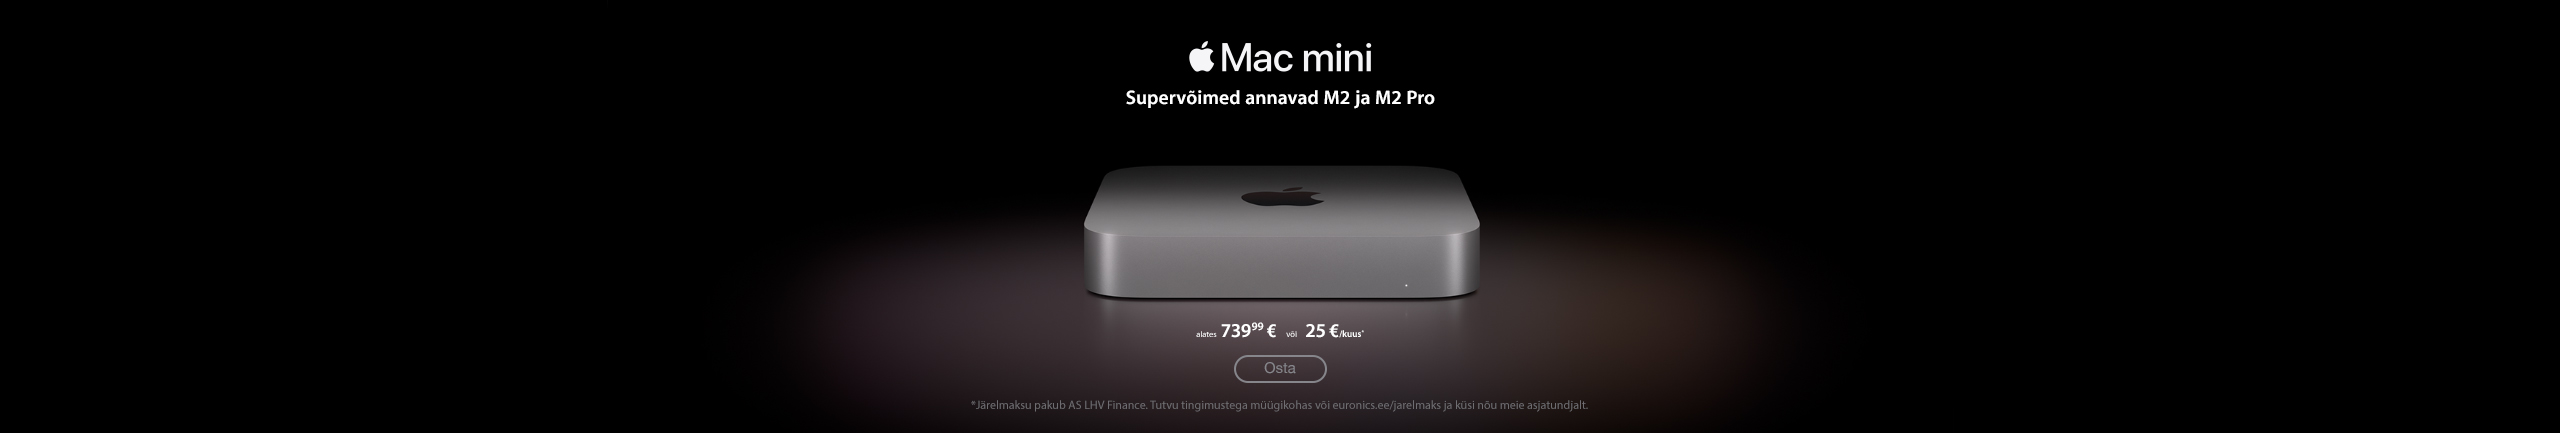 Uus Apple'i Mac mini nüüd kohal!